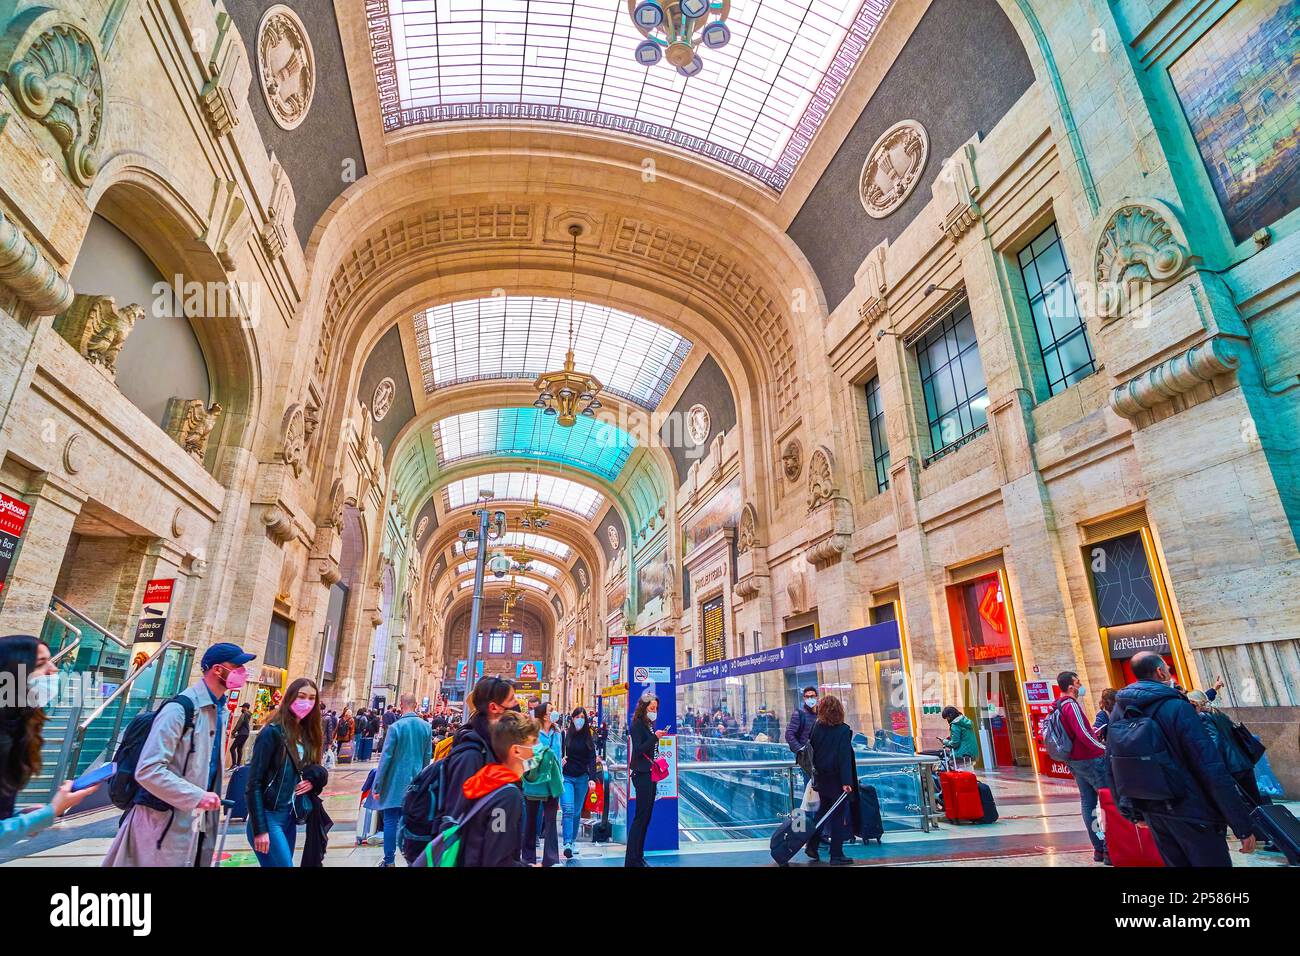 MAILAND, ITALIEN - 11. APRIL 2022: Die überfüllte Hauptgalerie des Bahnhofs Mailand Centrale, die im Art déco-Stil fertiggestellt wurde, wurde am 11. April in Mailand, Italien, eröffnet Stockfoto